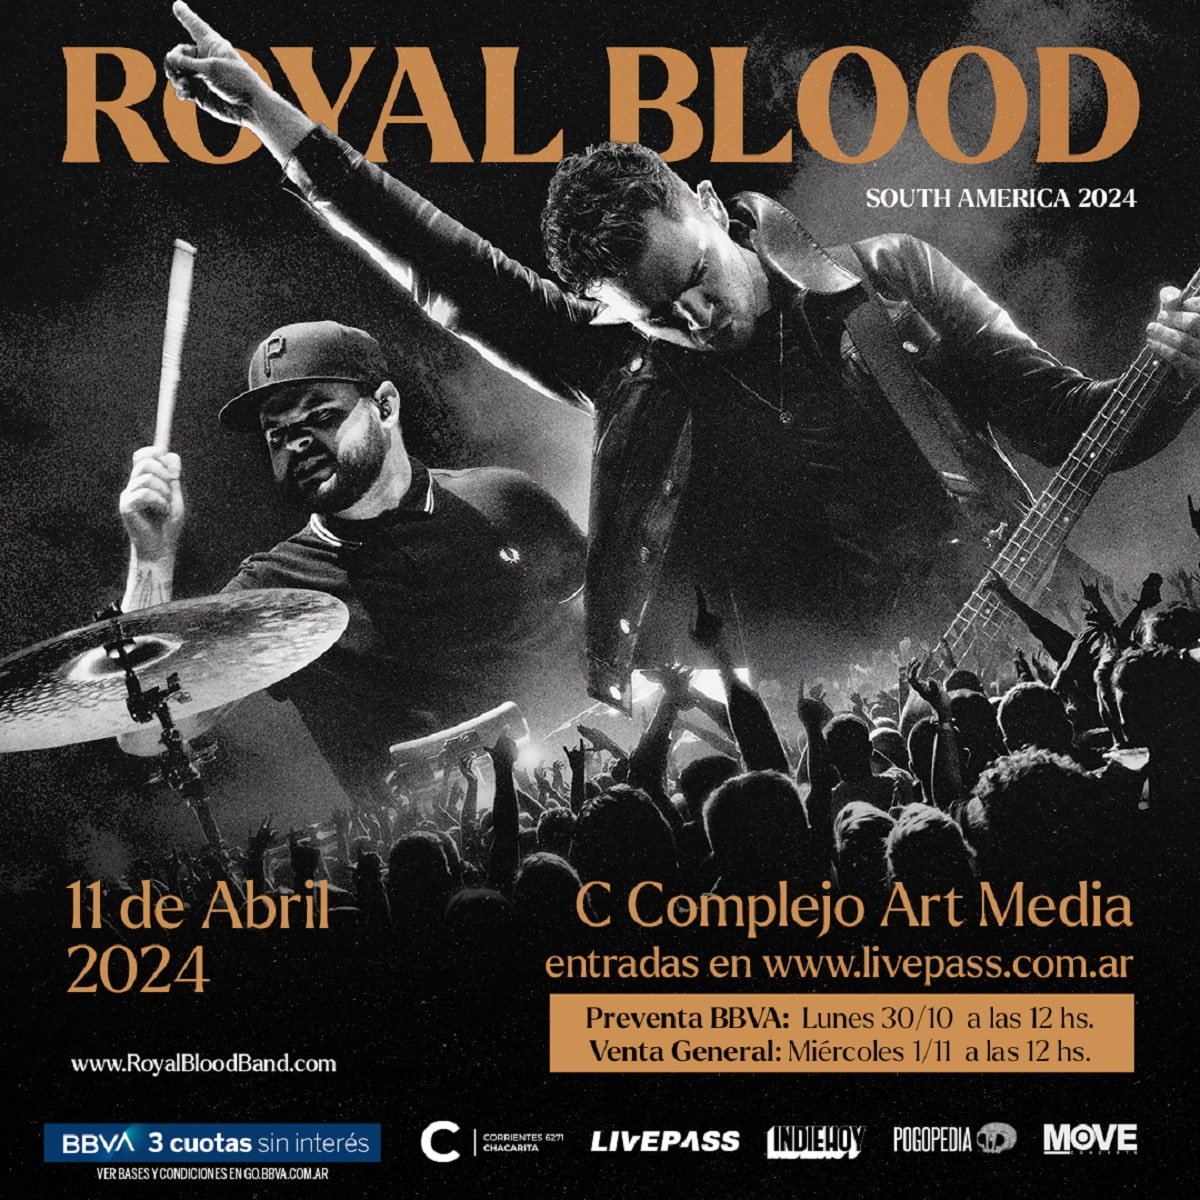 Royal Blood en Argentina